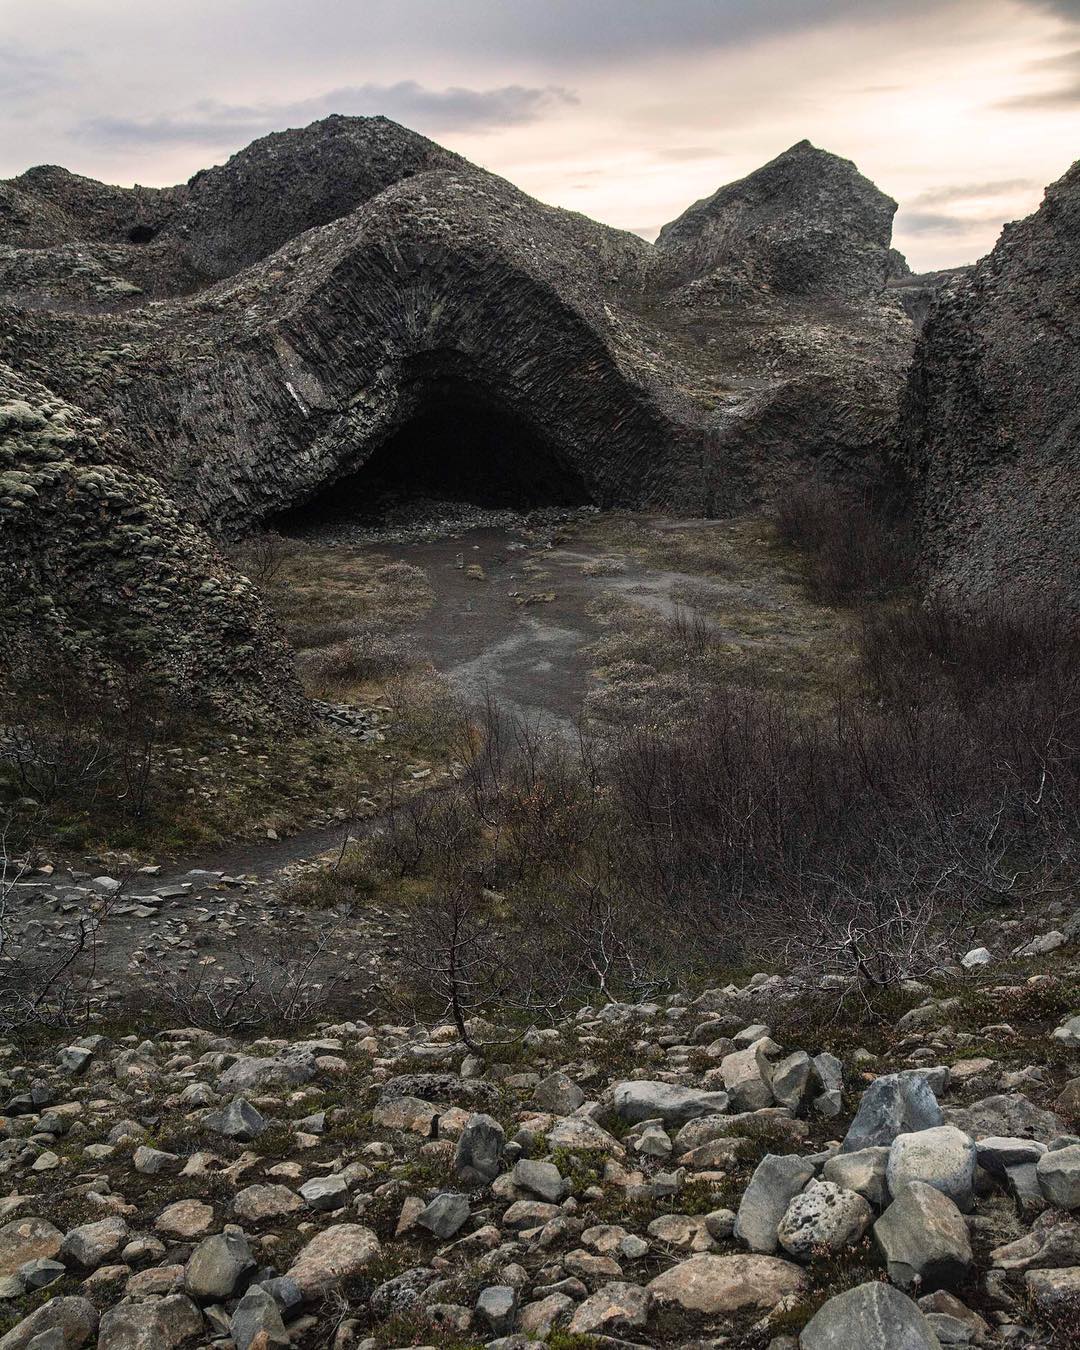 Jeskyně Kirkjan v Čedičovém městě Hljódaklettar . Pro mě okouzlující místo , kvuli vzhledu této jeskyně,kde zemská vrstva či jak to nazvat byla tlakem posouvána ale nebylo asi kam,tak vystoupila vzhůru a vytvořila tuhle zvláštní jeskyňi 
#Discovering#iceland#rauðhólar#kirkjan#basalt#cave#world#sunset#dnescestujem#travelling#traveller#mountains#landscape#photographer#nature#naturalmagicphotography#travellife#beautyful#planet#Earth#inspiredbynature#inspiredbyiceland#jsemnikon#dnescestujem#neverstopexploring#stayandwander#wheniniceland